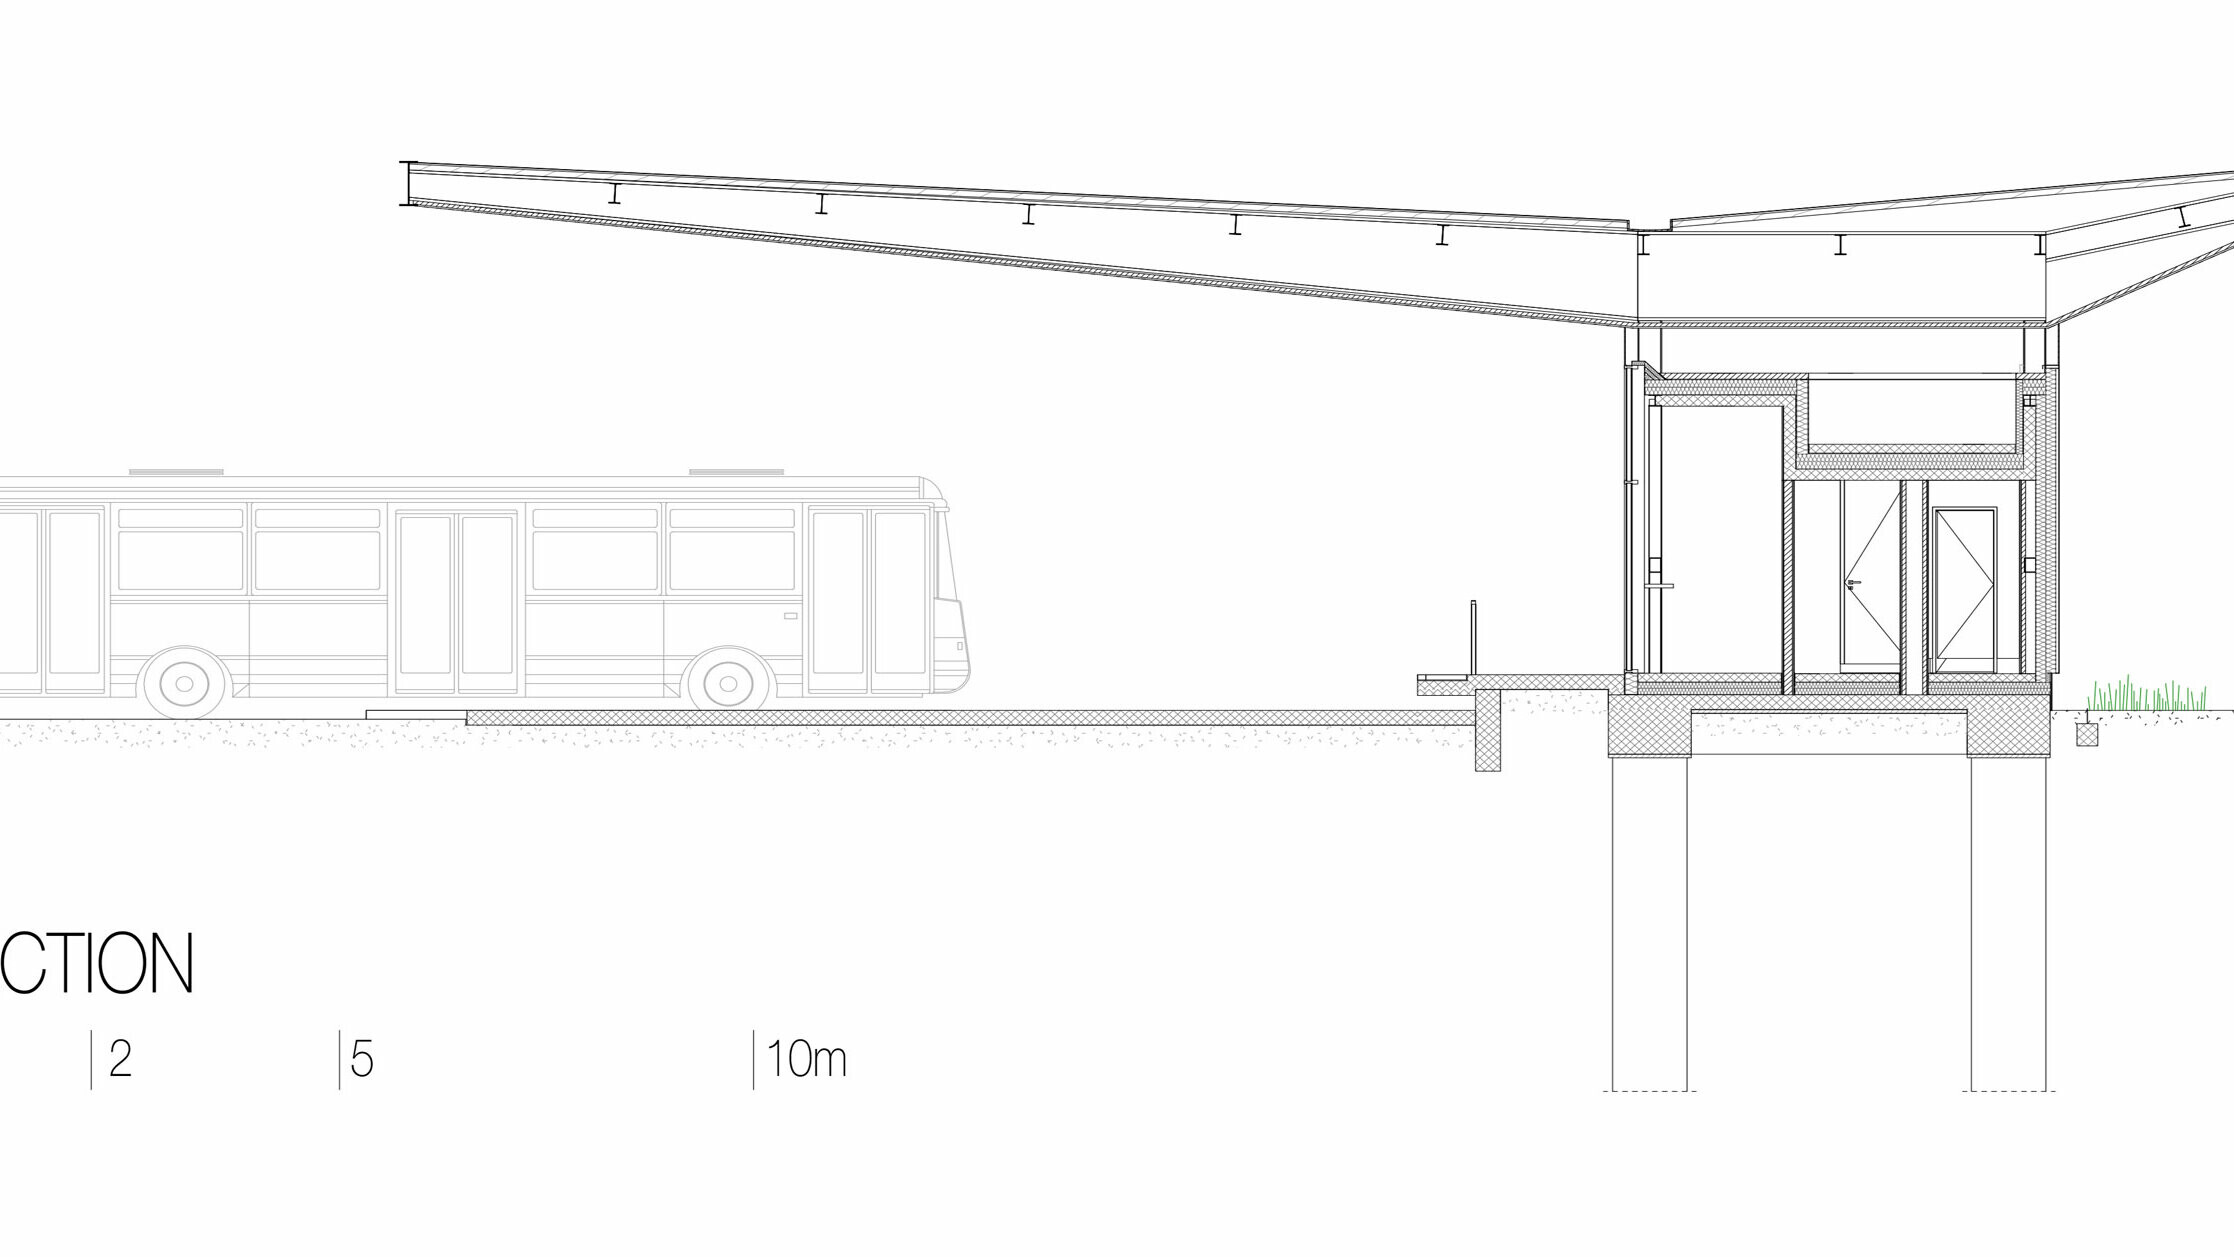 Kresba zobrazuje prierez autobusovou stanicou "Autobusni Kolodvor Slavonski Brod" v Chorvátsku. Rez znázorňuje konštrukciu budovy vrátane bielej strechy PREFA Prefalz, ktorá spočíva na štíhlych stĺpoch a vyčnieva vysoko nad plochy pod ňou. Pod strechou sa nachádzajú vnútorné priestory stanice s jasnými líniami a veľkými sklenenými plochami. Na výkrese je znázornená aj základová konštrukcia a podzemné stĺpy, ktoré podopierajú stavbu. Na ľavej strane je na ilustráciu proporcií zobrazený autobus. Prierez zdôrazňuje modernú a funkčnú konštrukciu autobusovej zastávky a integráciu skla a hliníka do návrhu.